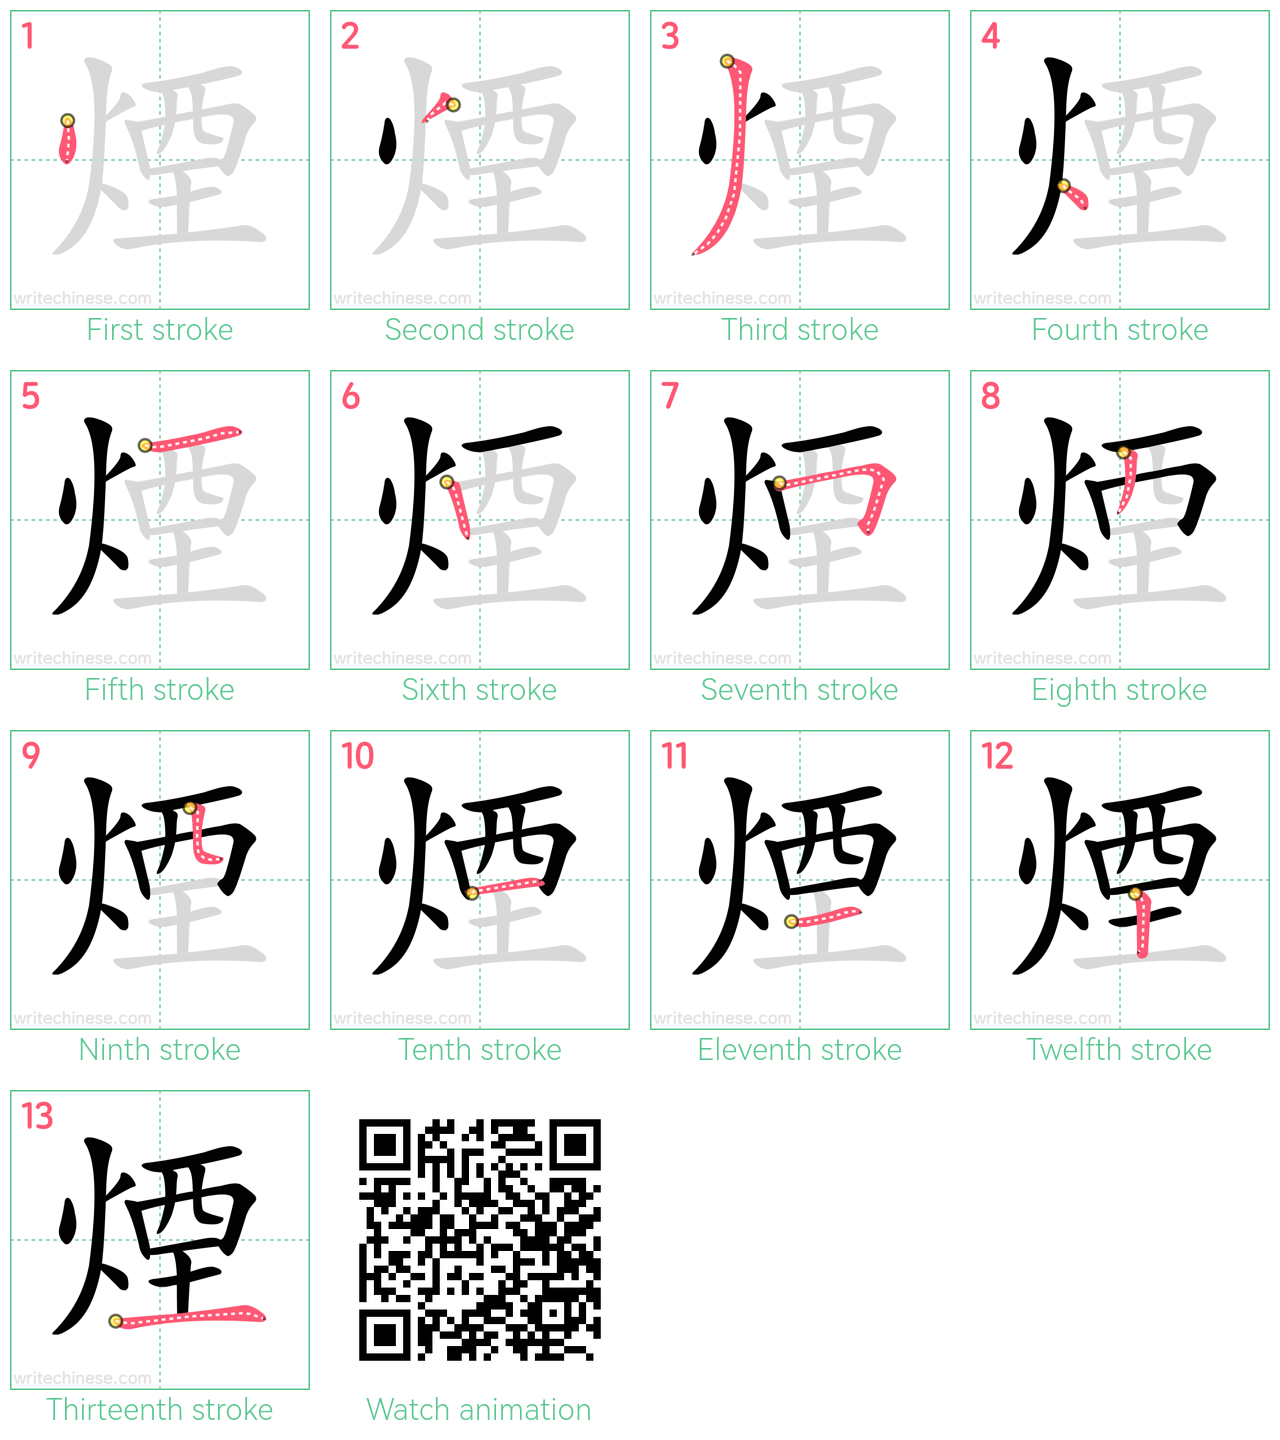 煙 step-by-step stroke order diagrams